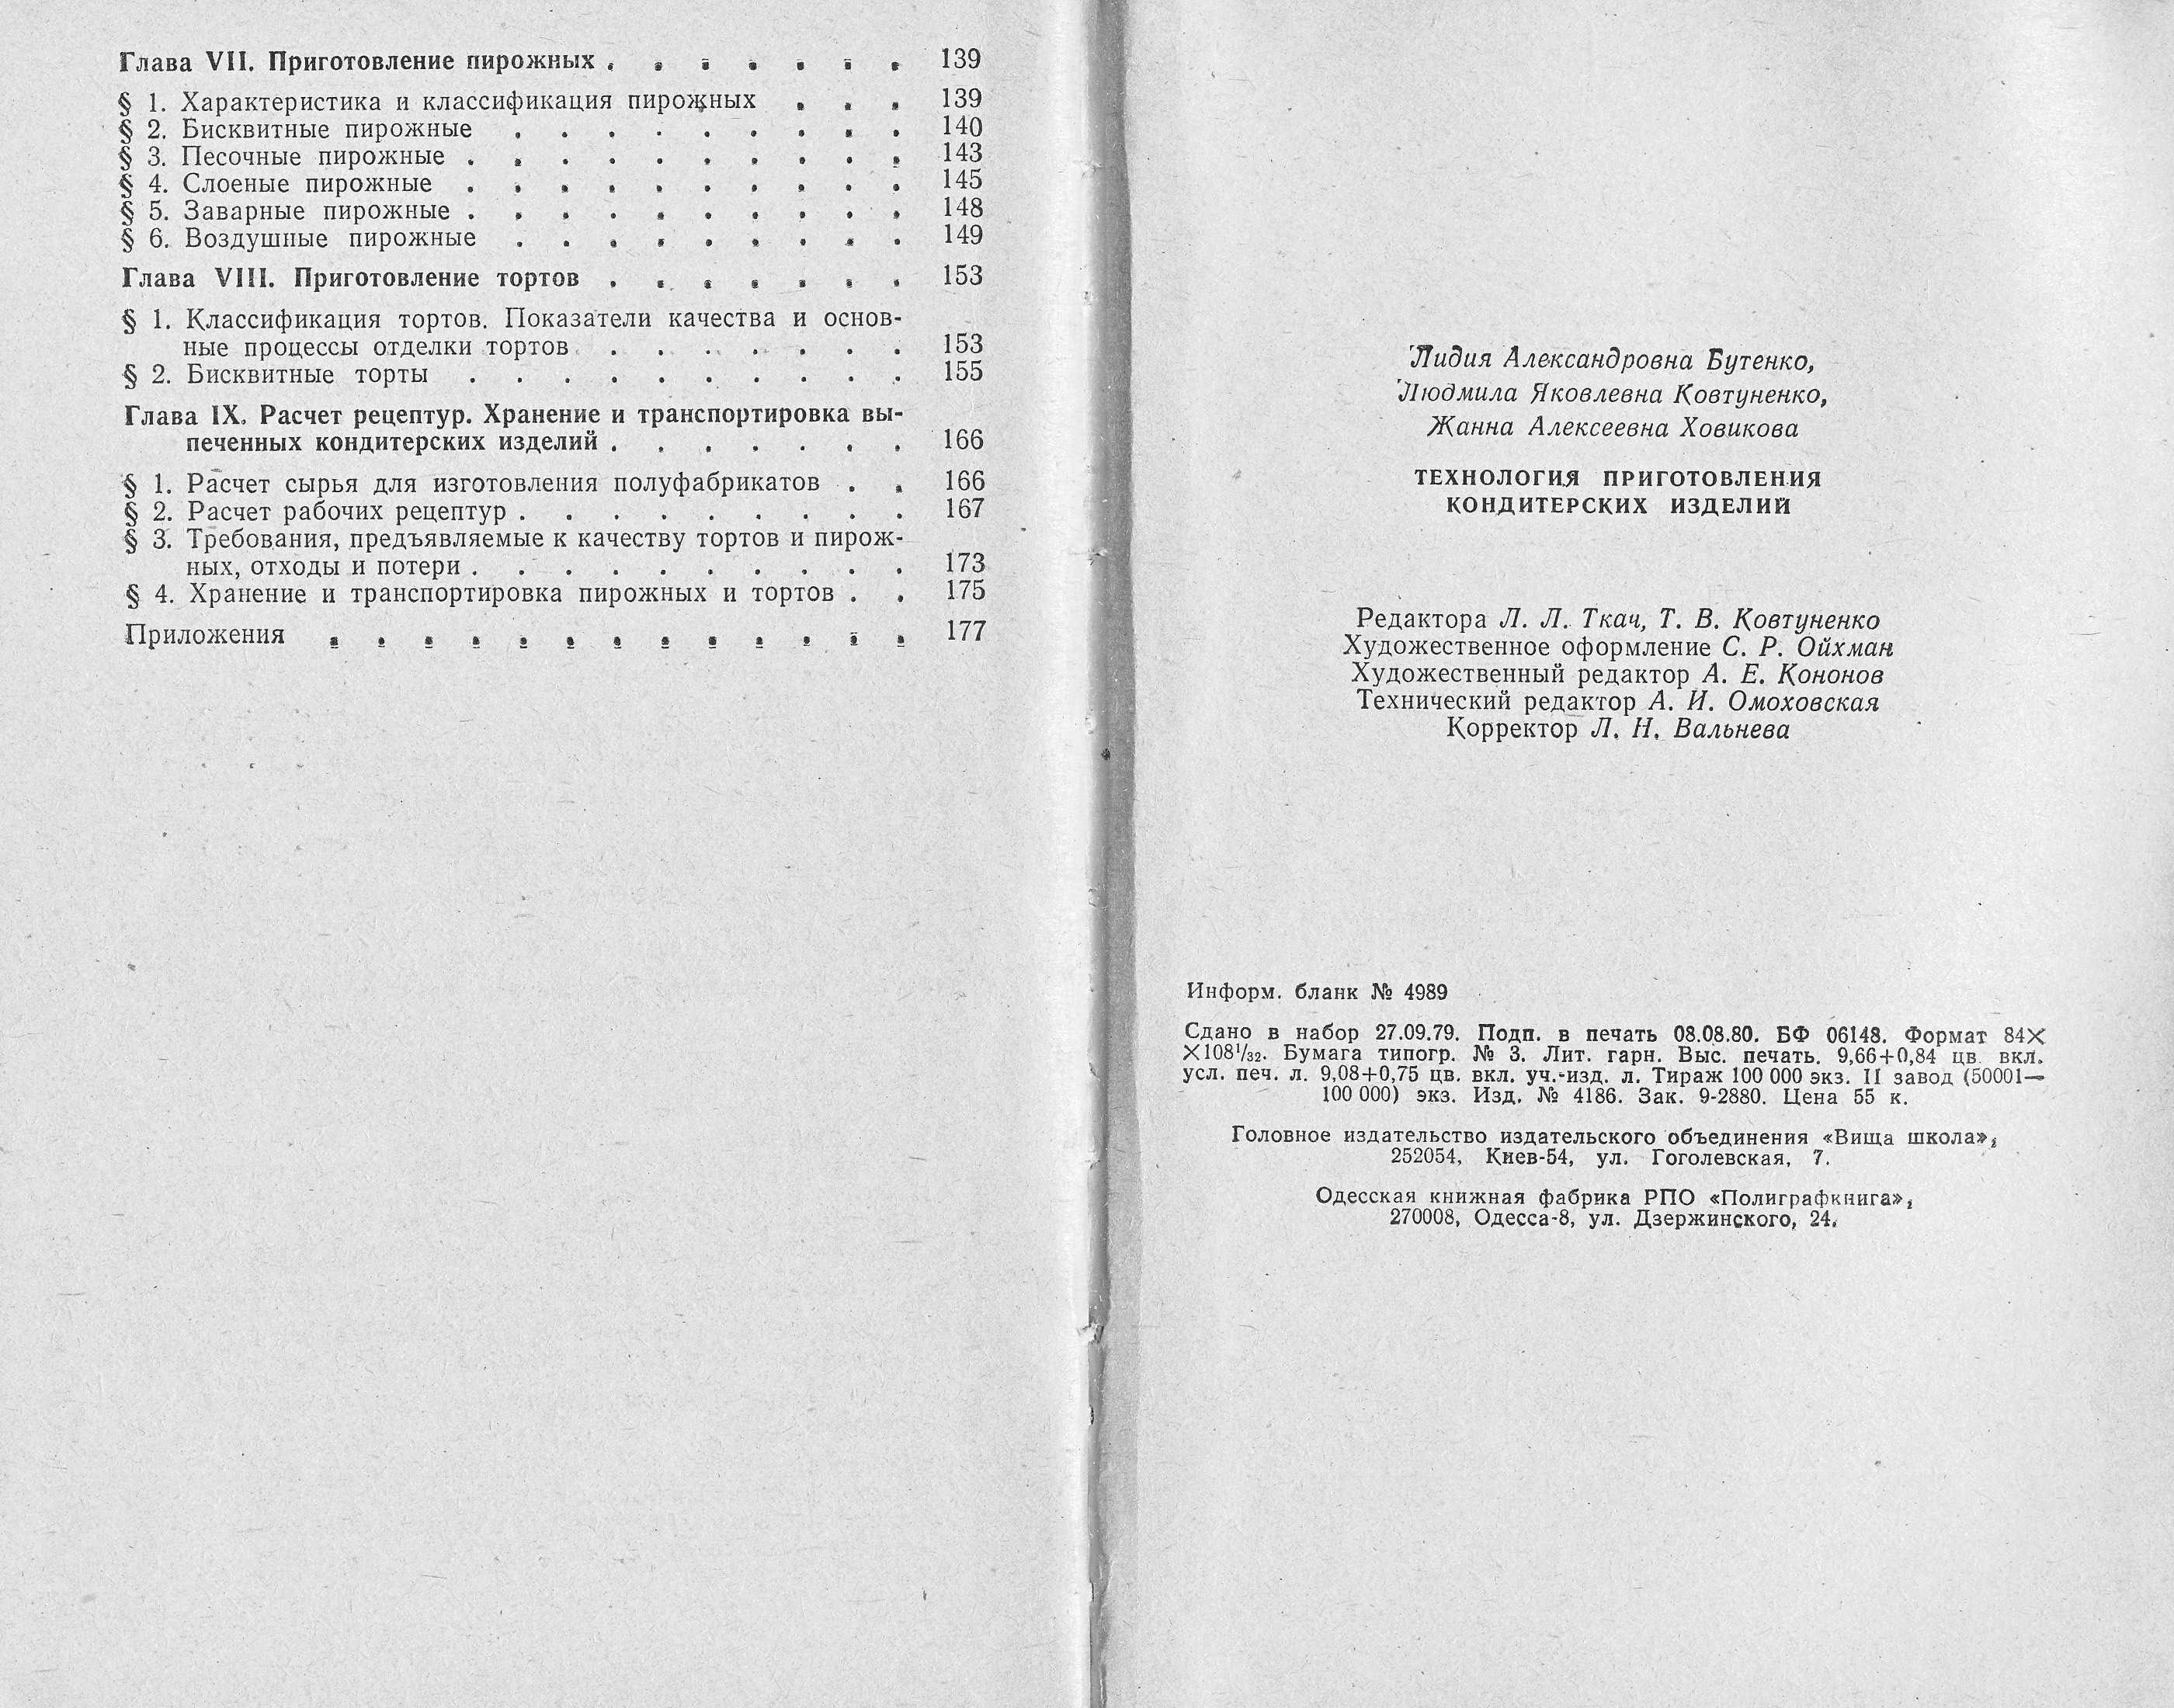 Технологія приготування кондитерських виробів Л.А. Бутенко, Л.Я. Ковтуненко, Ж.А. Ховікова 1980 г. сторінки 182‒183